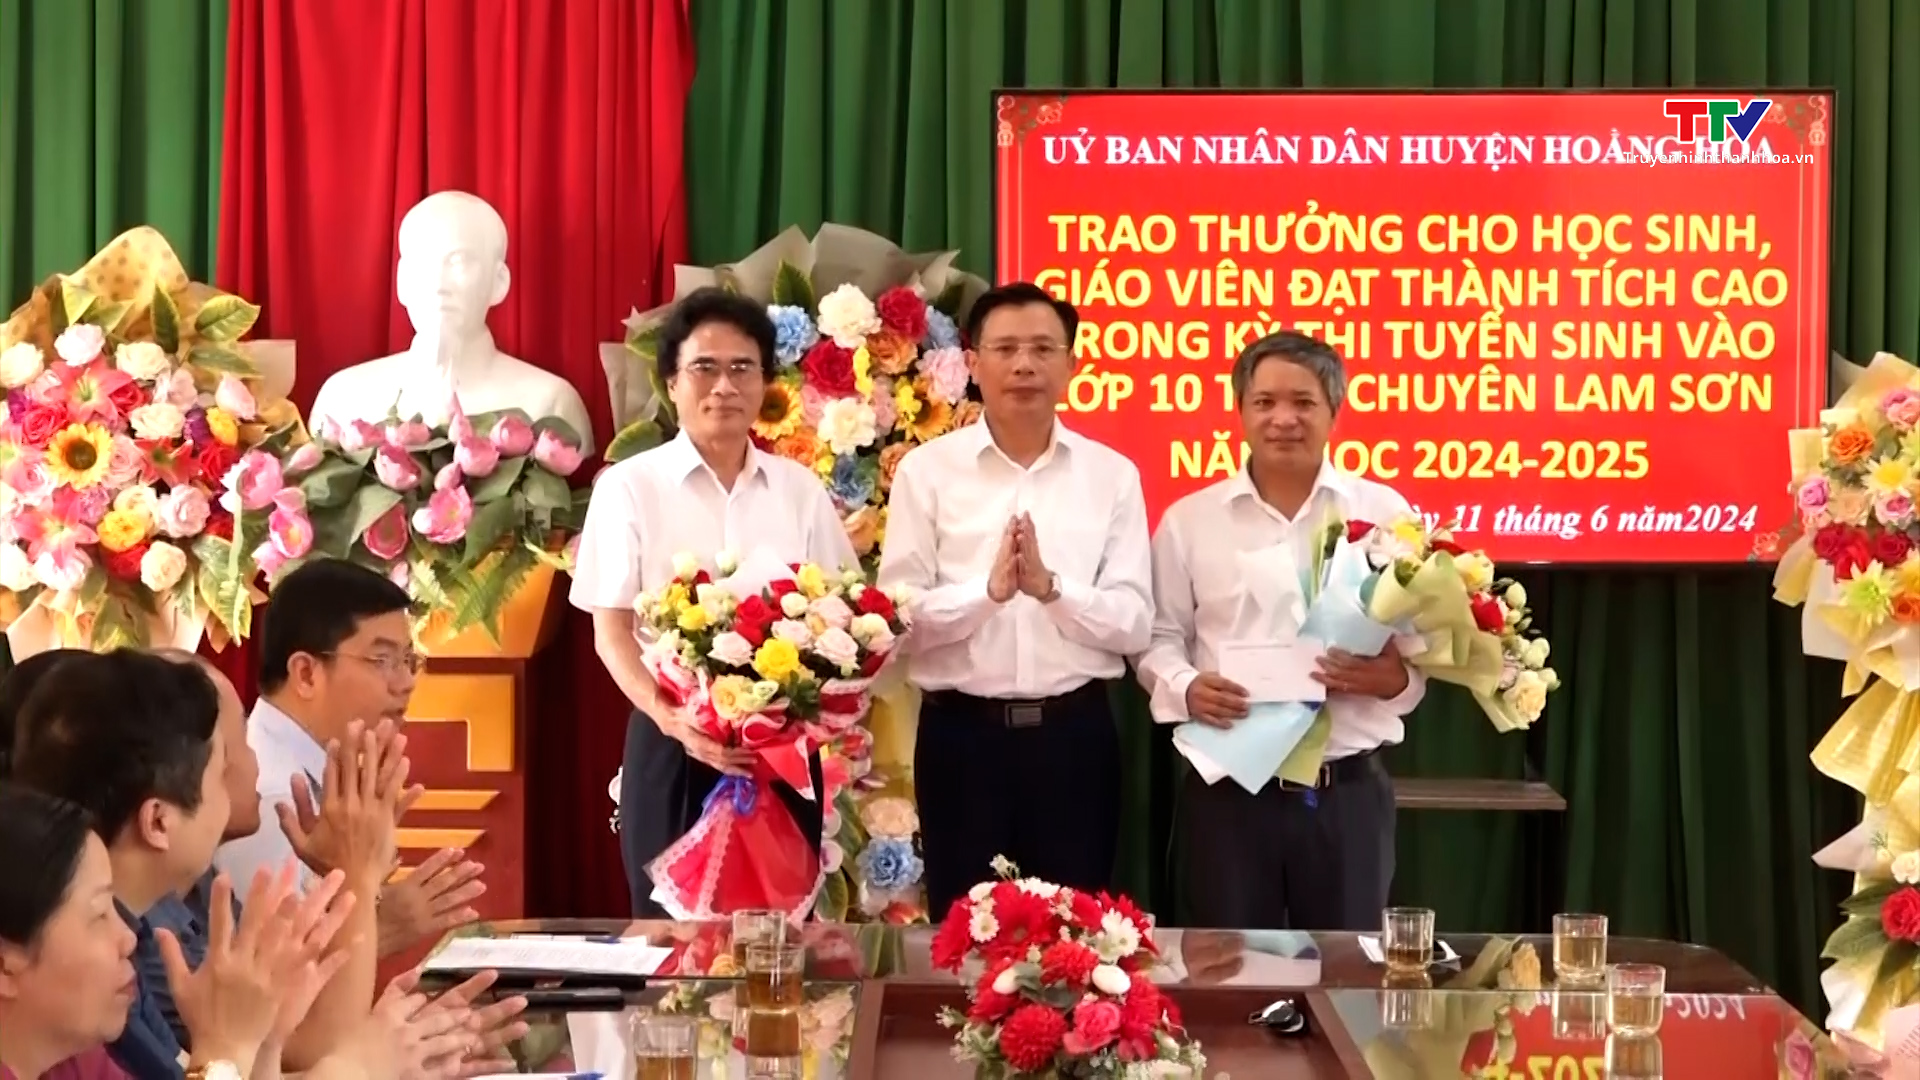 Hoằng Hóa trao thưởng cho học sinh, giáo viên đạt thành tích cao trong kỳ thi tuyển sinh vào lớp 10 THPT chuyên Lam Sơn- Ảnh 1.